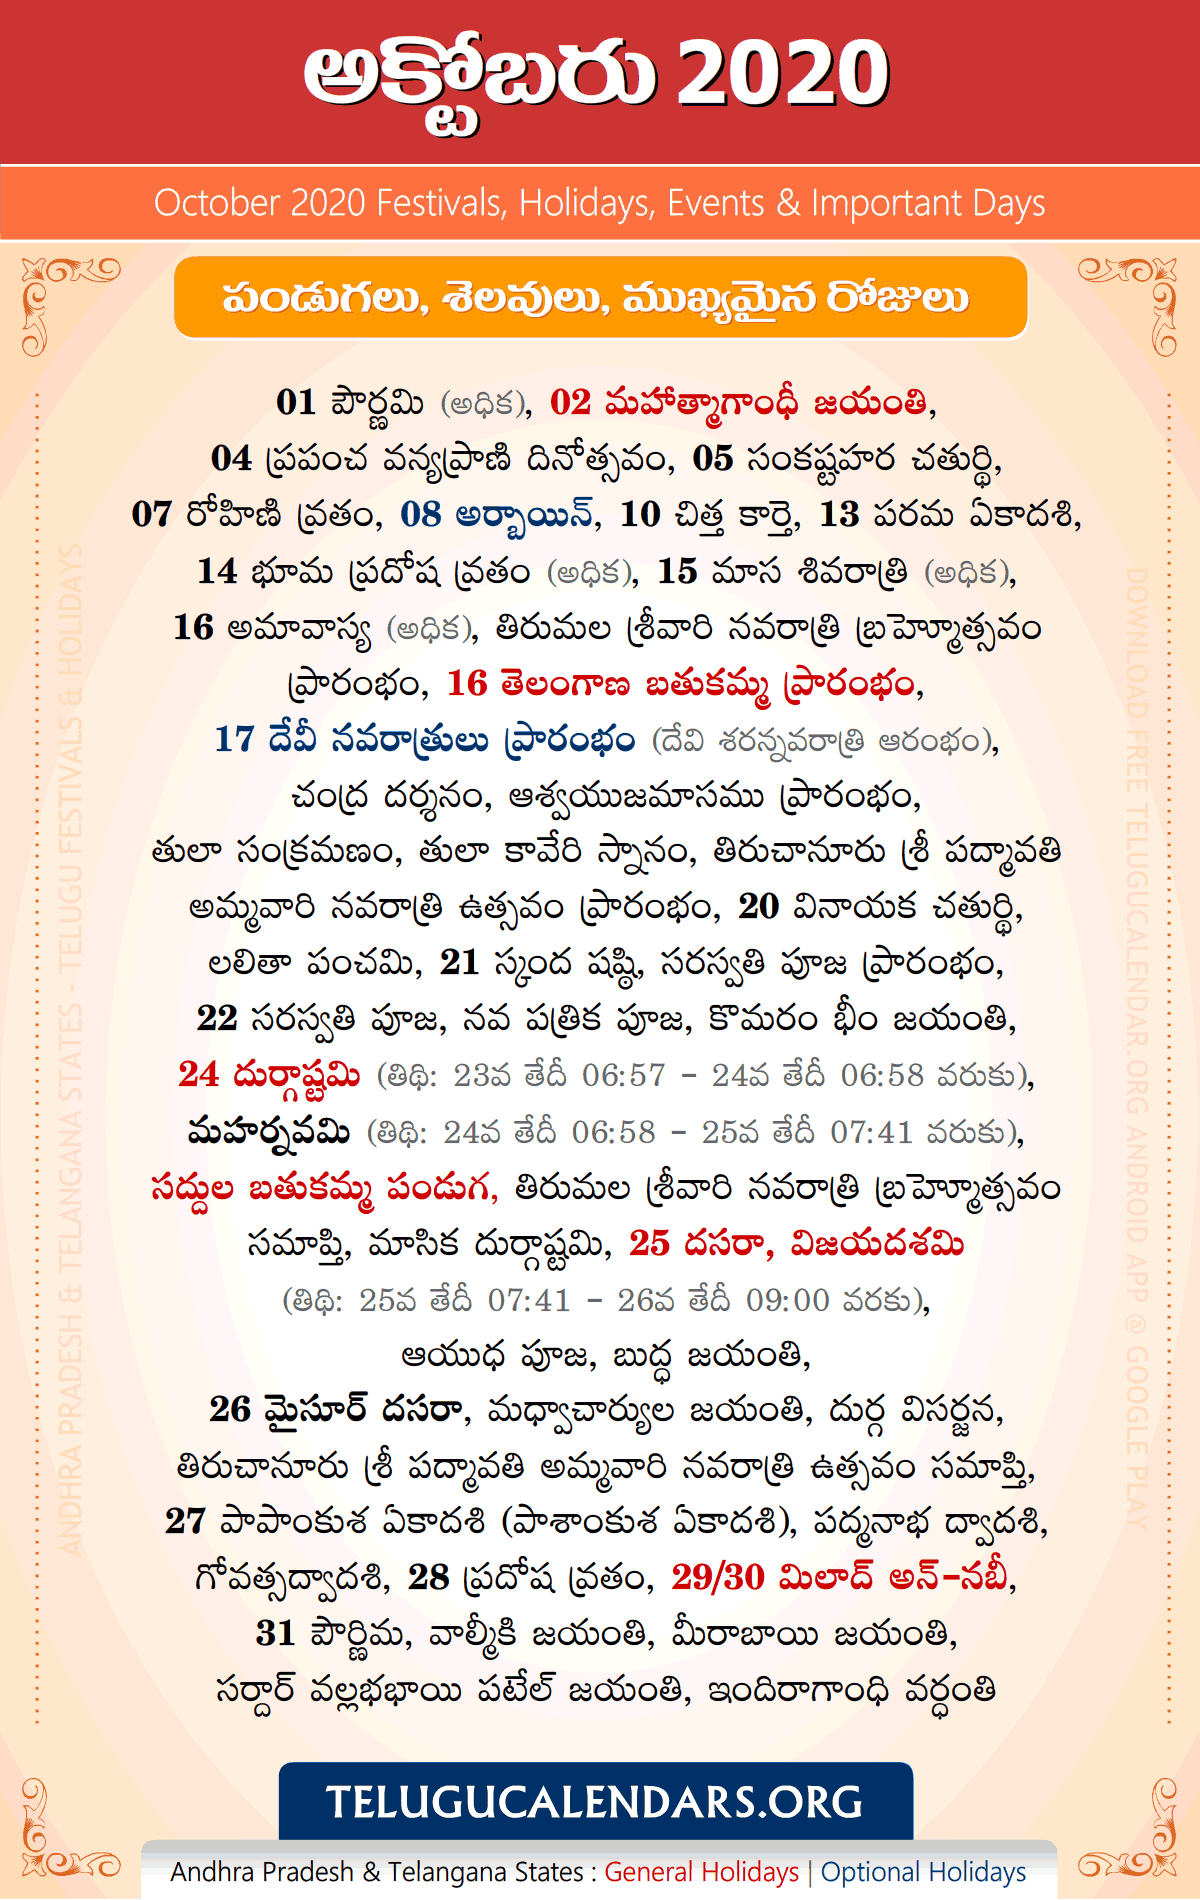 Telugu Festivals 2020 October (IST)